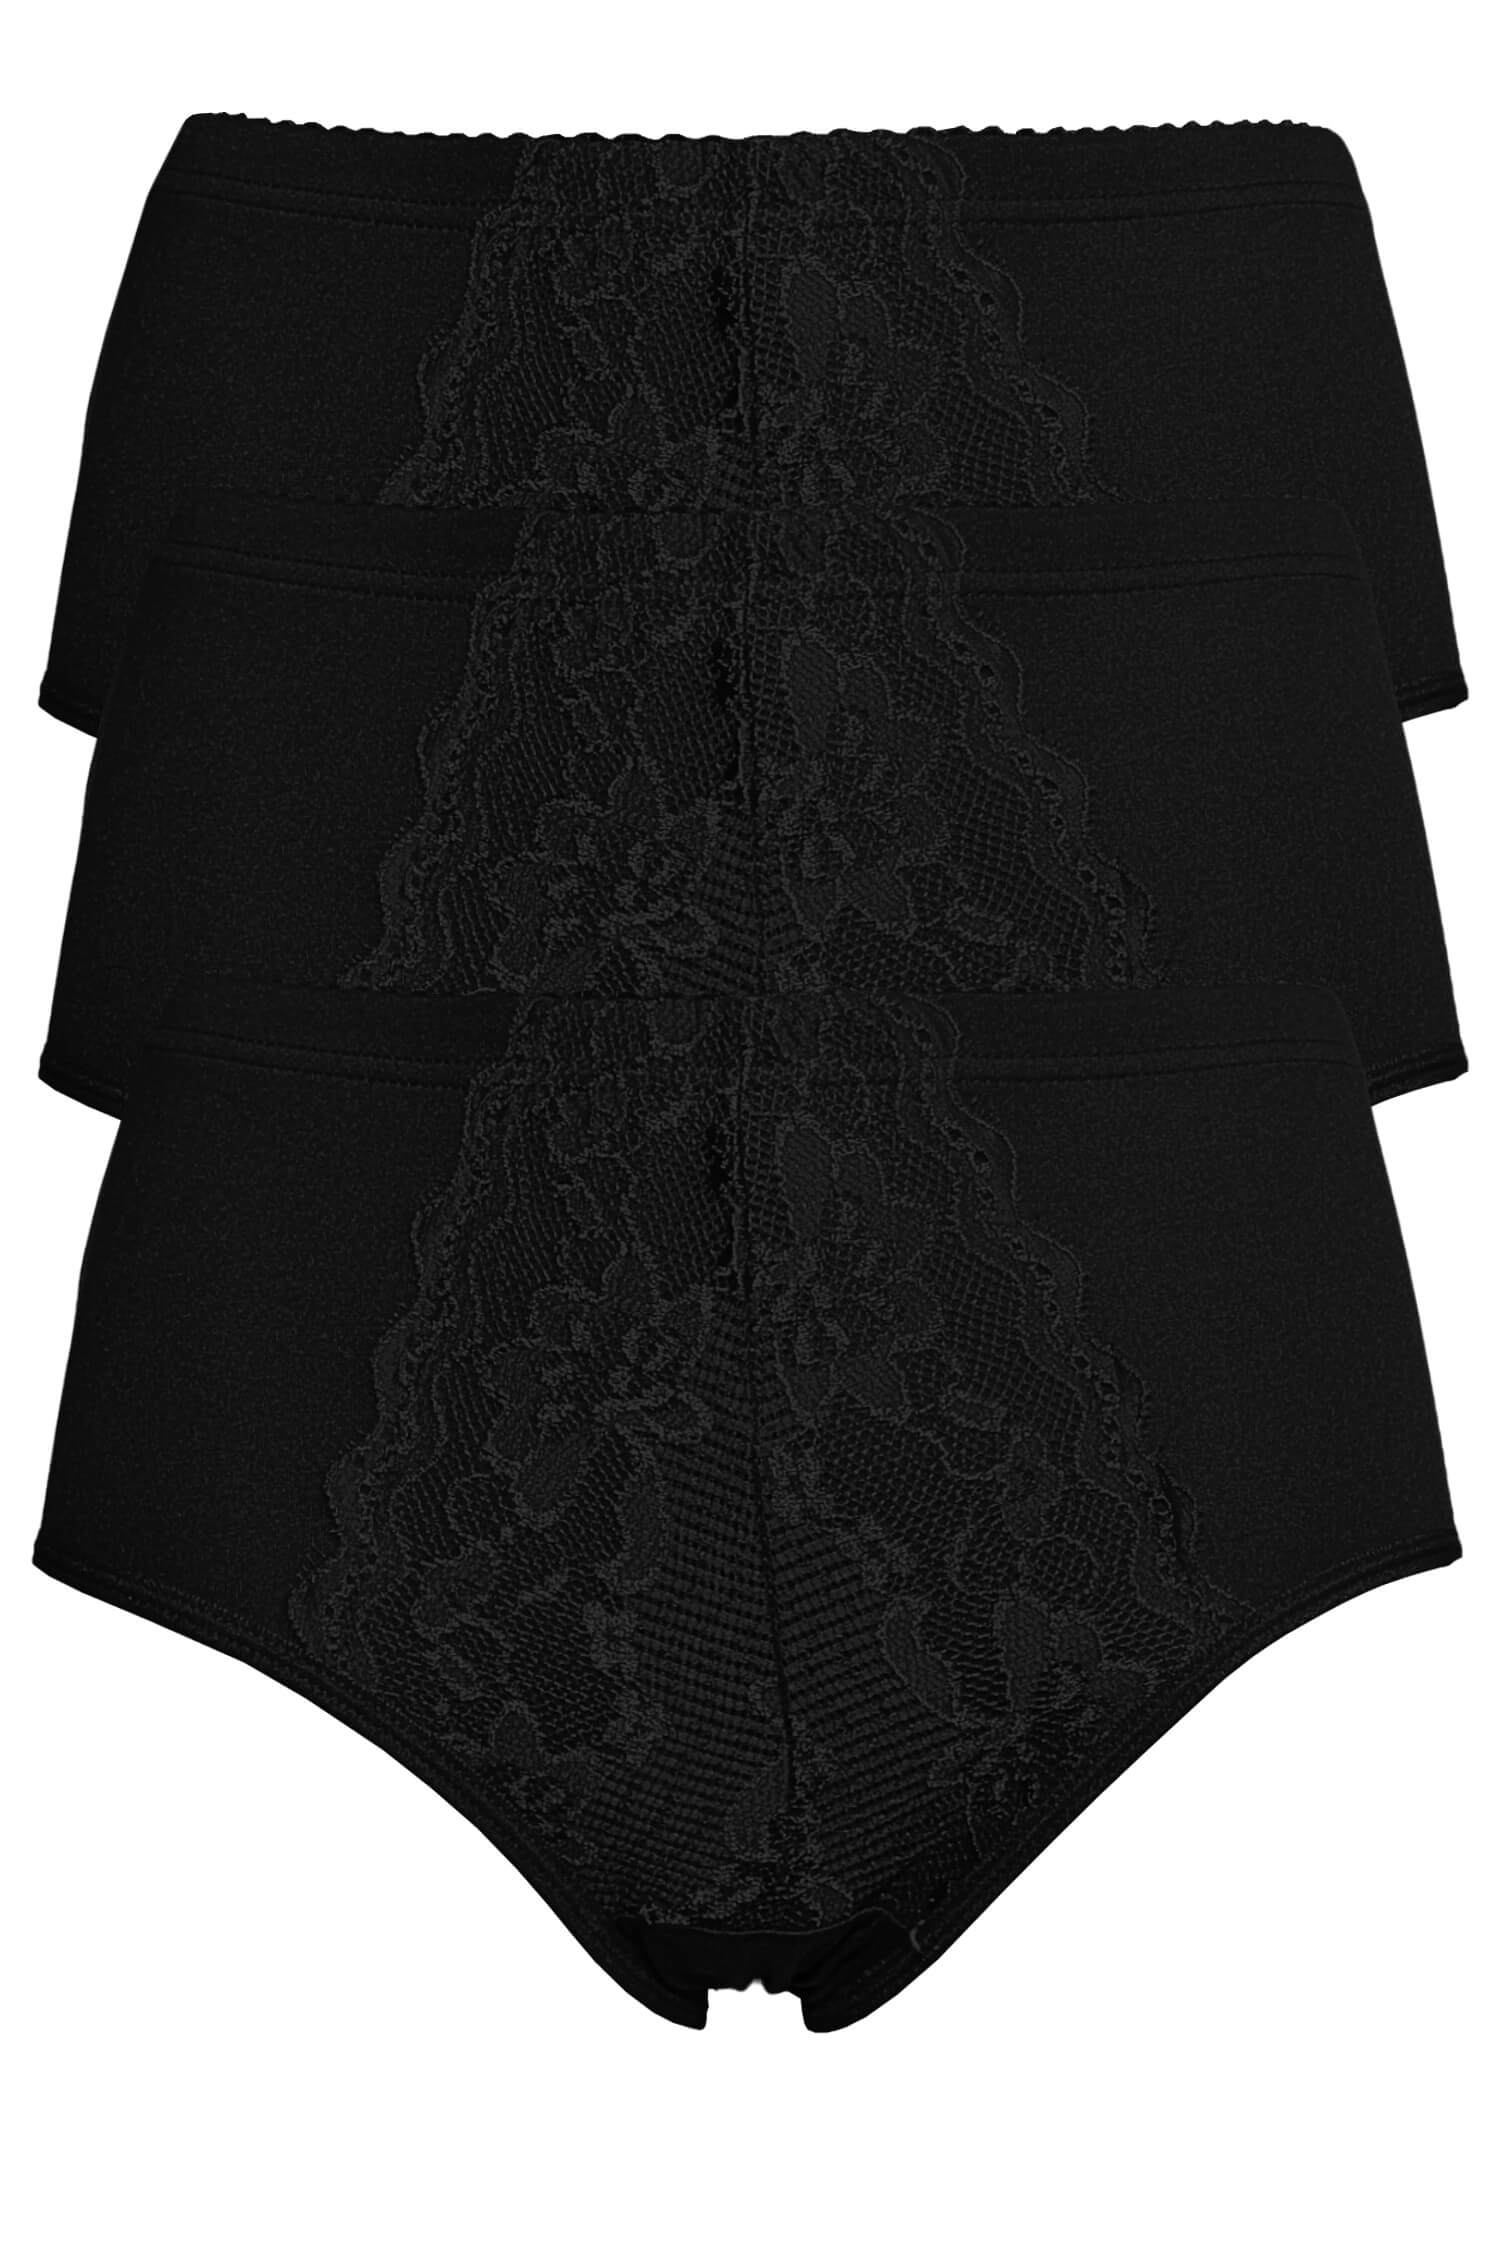 Jitka dámské bavlněné kalhotky s krajkou 9040 - 3 ks černá XXL